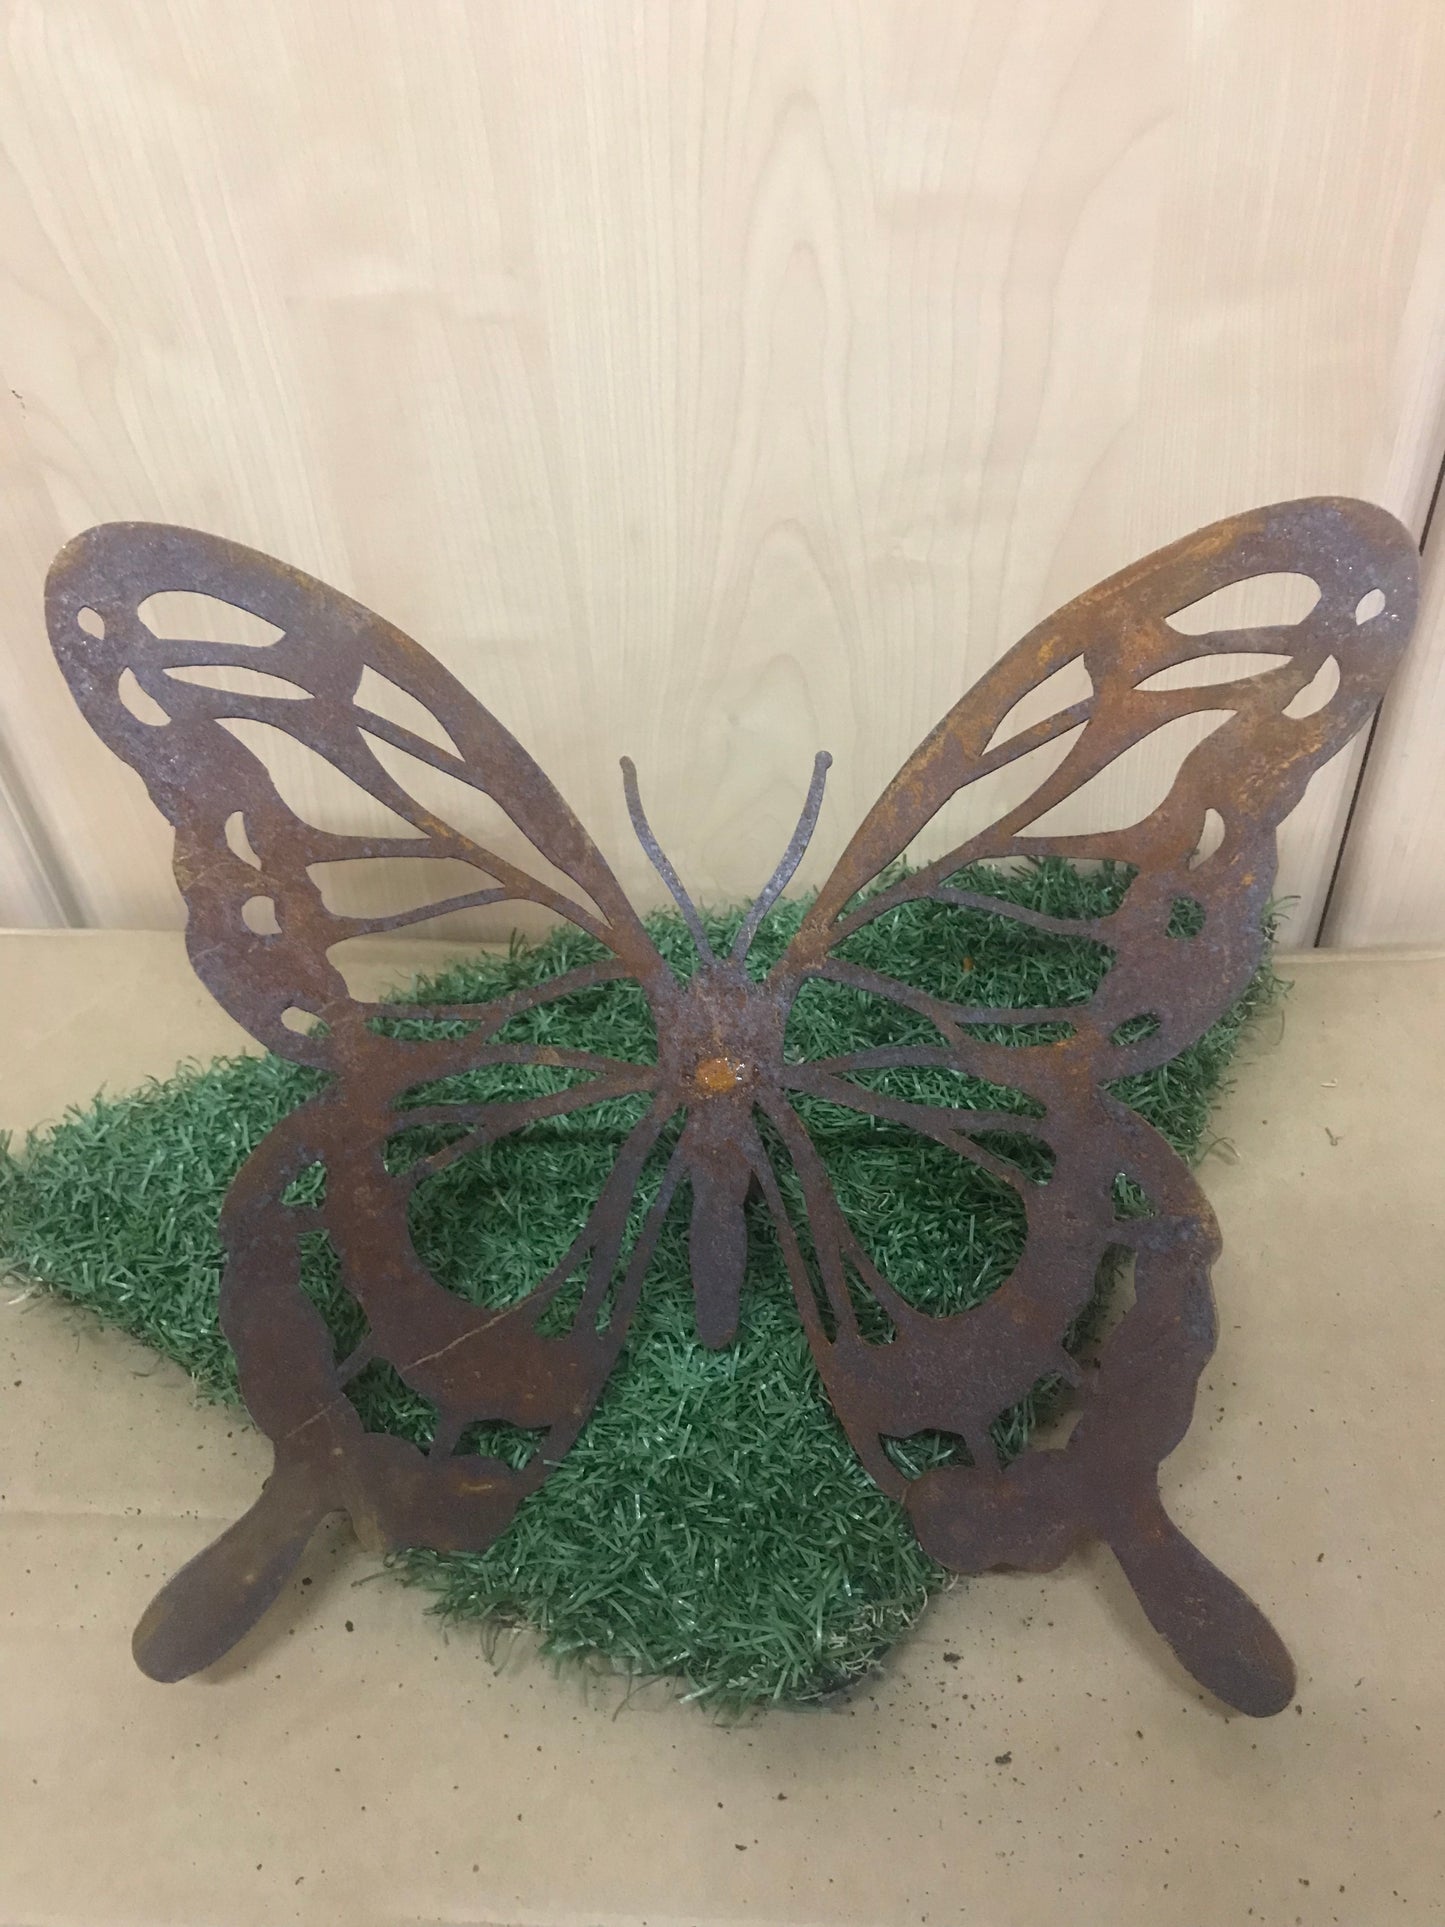 Grote vlinder model"A" met stang 80cm